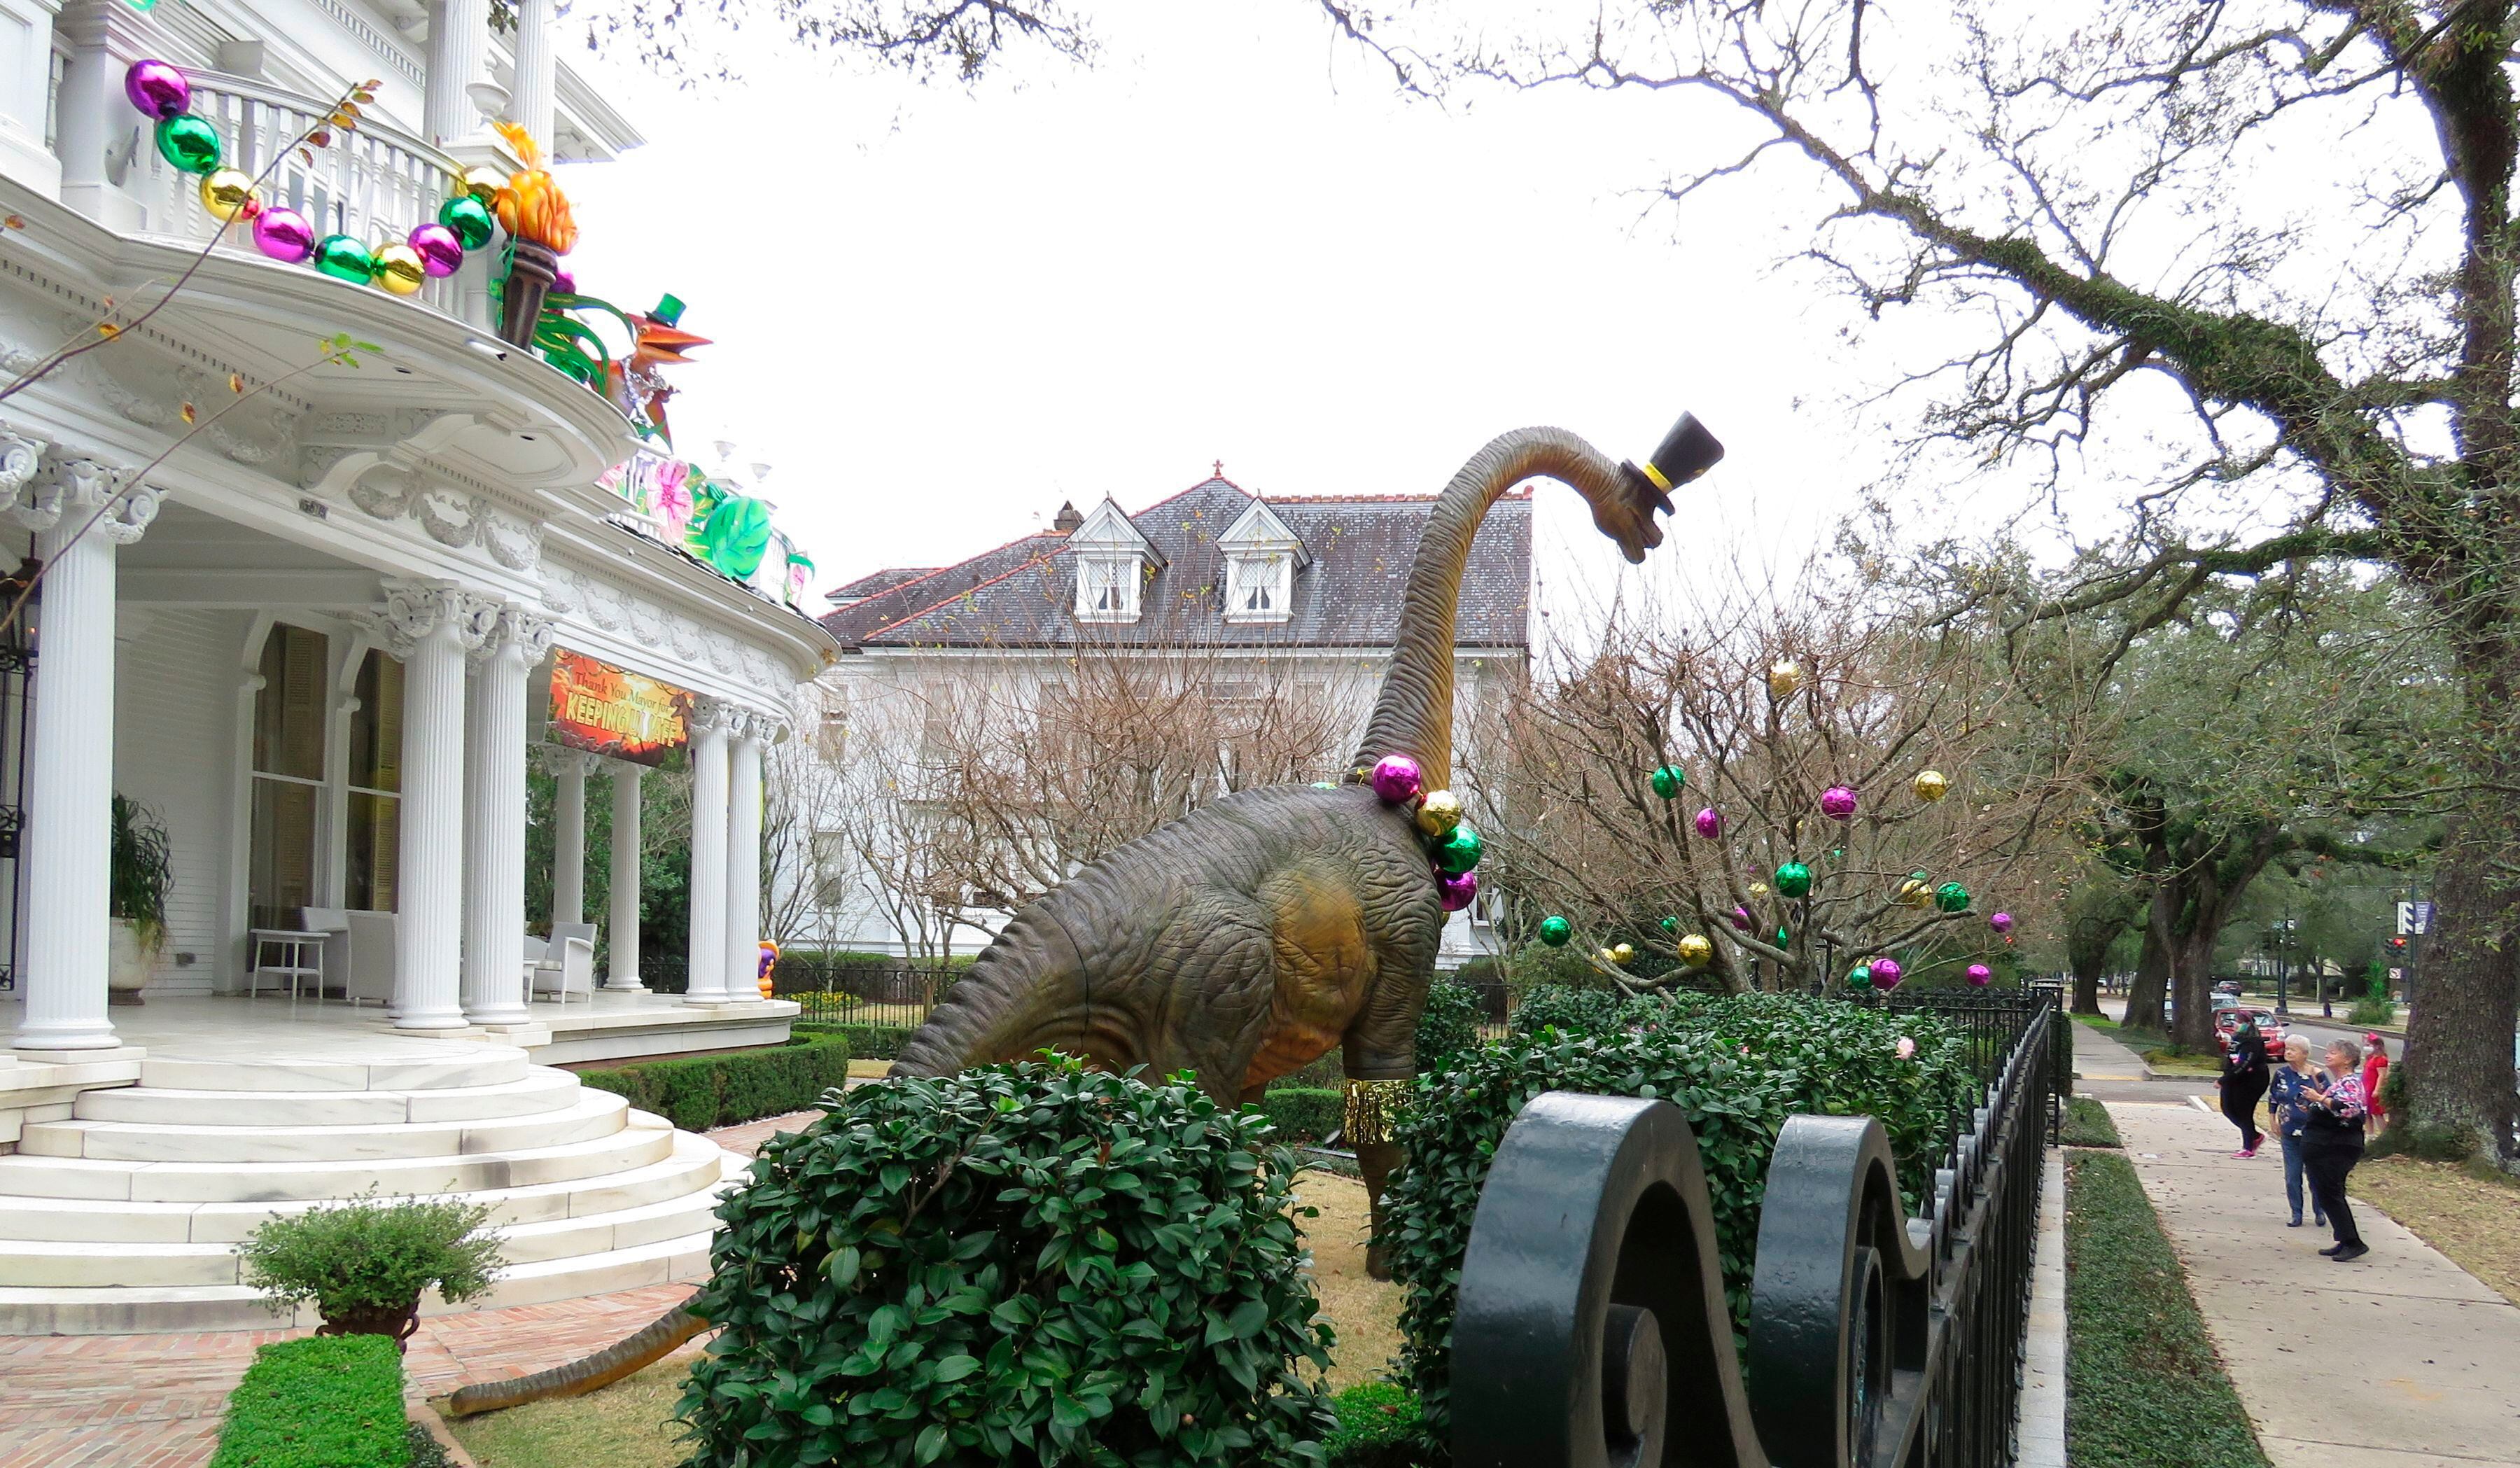 Transeúntes se detienen a ver un enorme dinosaurio en una mansión en la avenida St. Charles de Nueva Orleans el martes 26 de enero de 2021. La pancarta dice: "Gracias, alcaldesa, por mantenernos seguros". Con la cancelación de los tradicionales desfiles de Mardi Gras debido a la pandemia de coronavirus, miles alrededor de la ciudad han decorado sus casas para celebrar el Carnaval. (AP Foto/Janet McConnaughey)